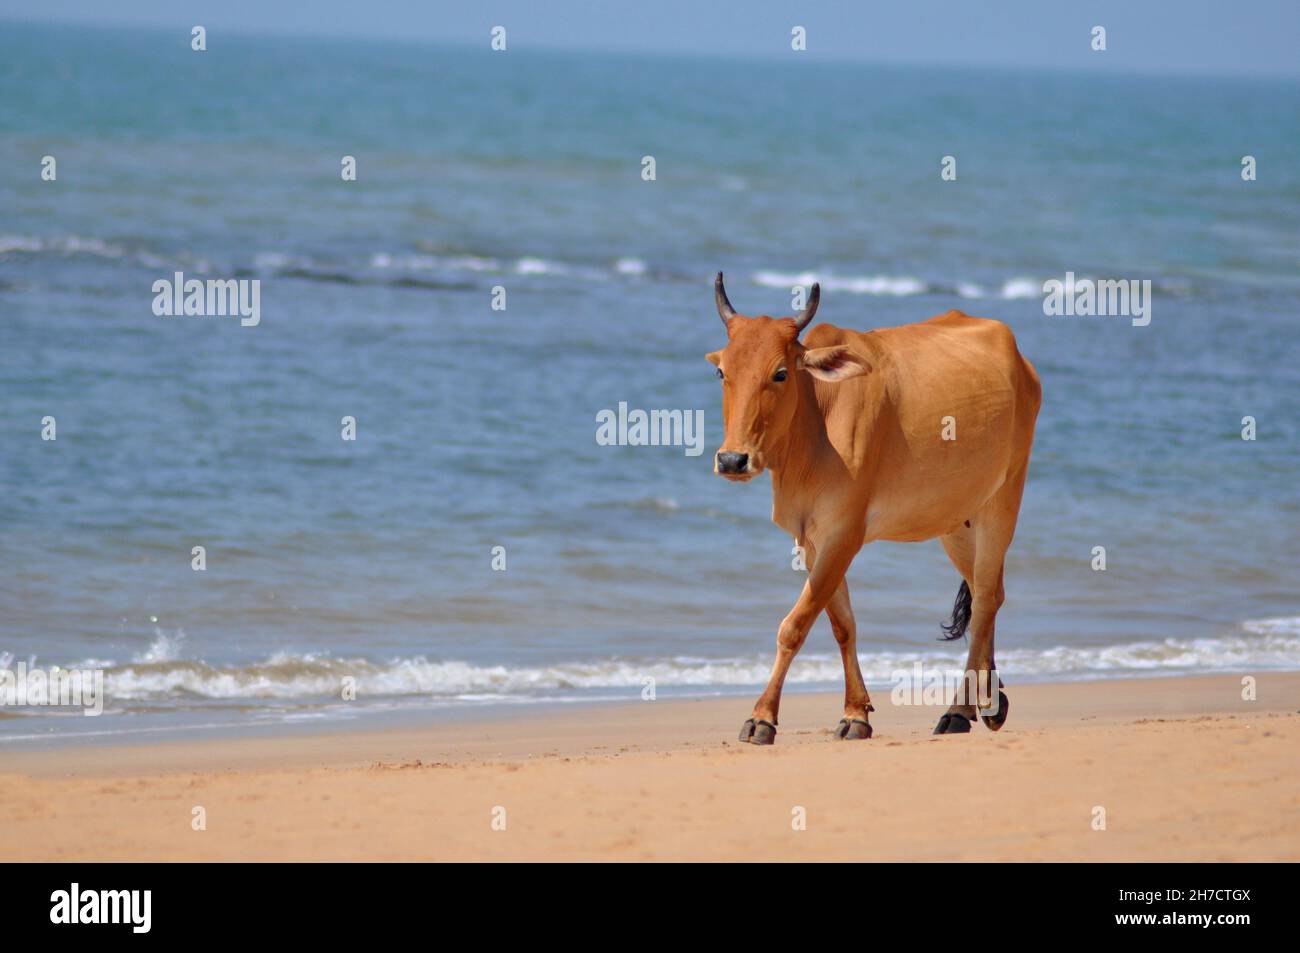 Cattle indien, Bos indicus, marcher sur une plage, Anjuna, Goa, Inde Banque D'Images